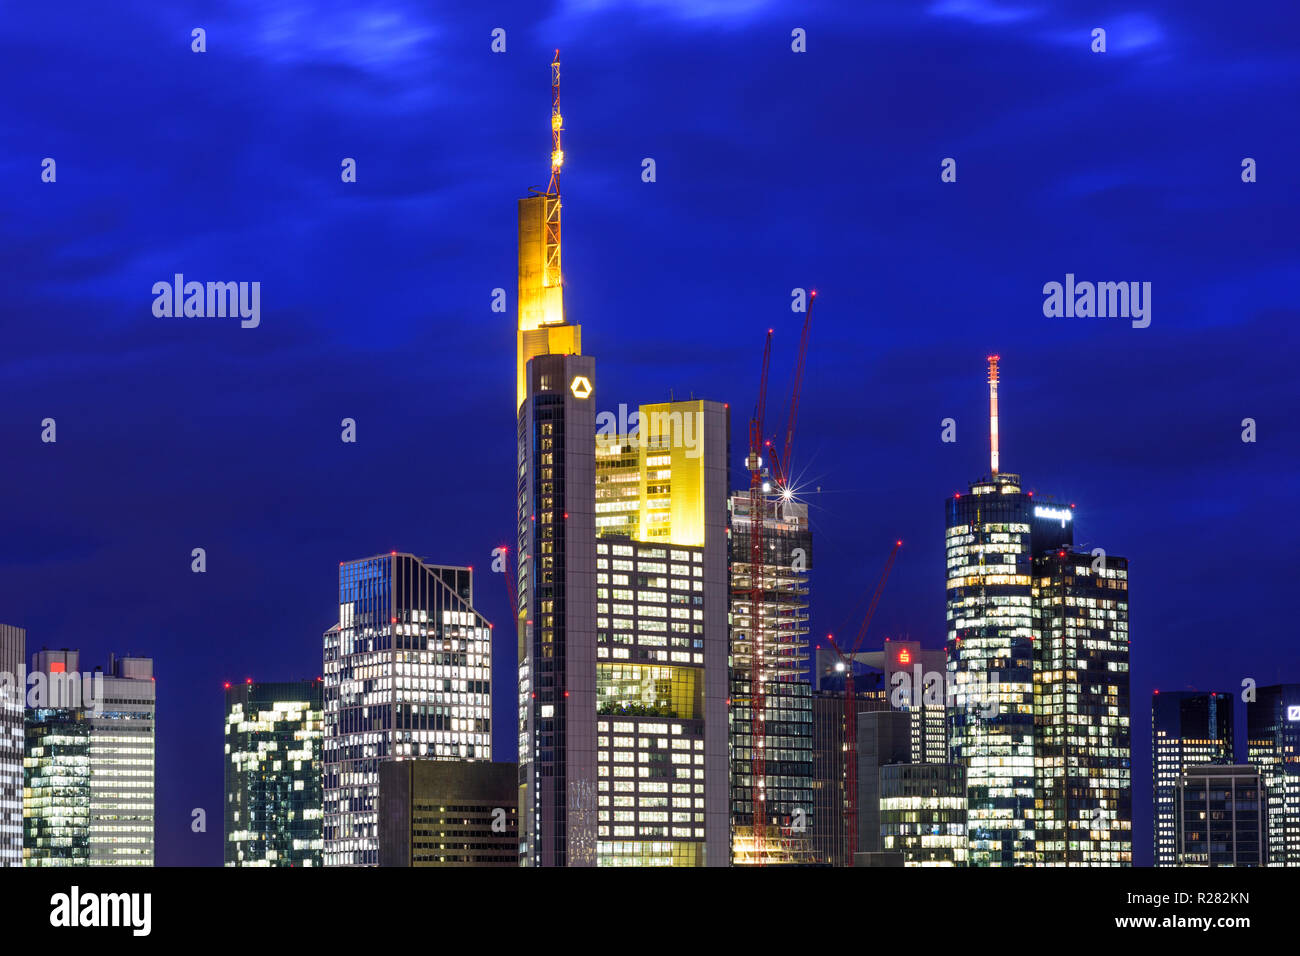 Frankfurt am Main: Blick vom Dom (Kathedrale) zum Stadtzentrum mit Wolkenkratzern und Bürogebäuden im Financial District, Commerzbank Tower, Stockfoto